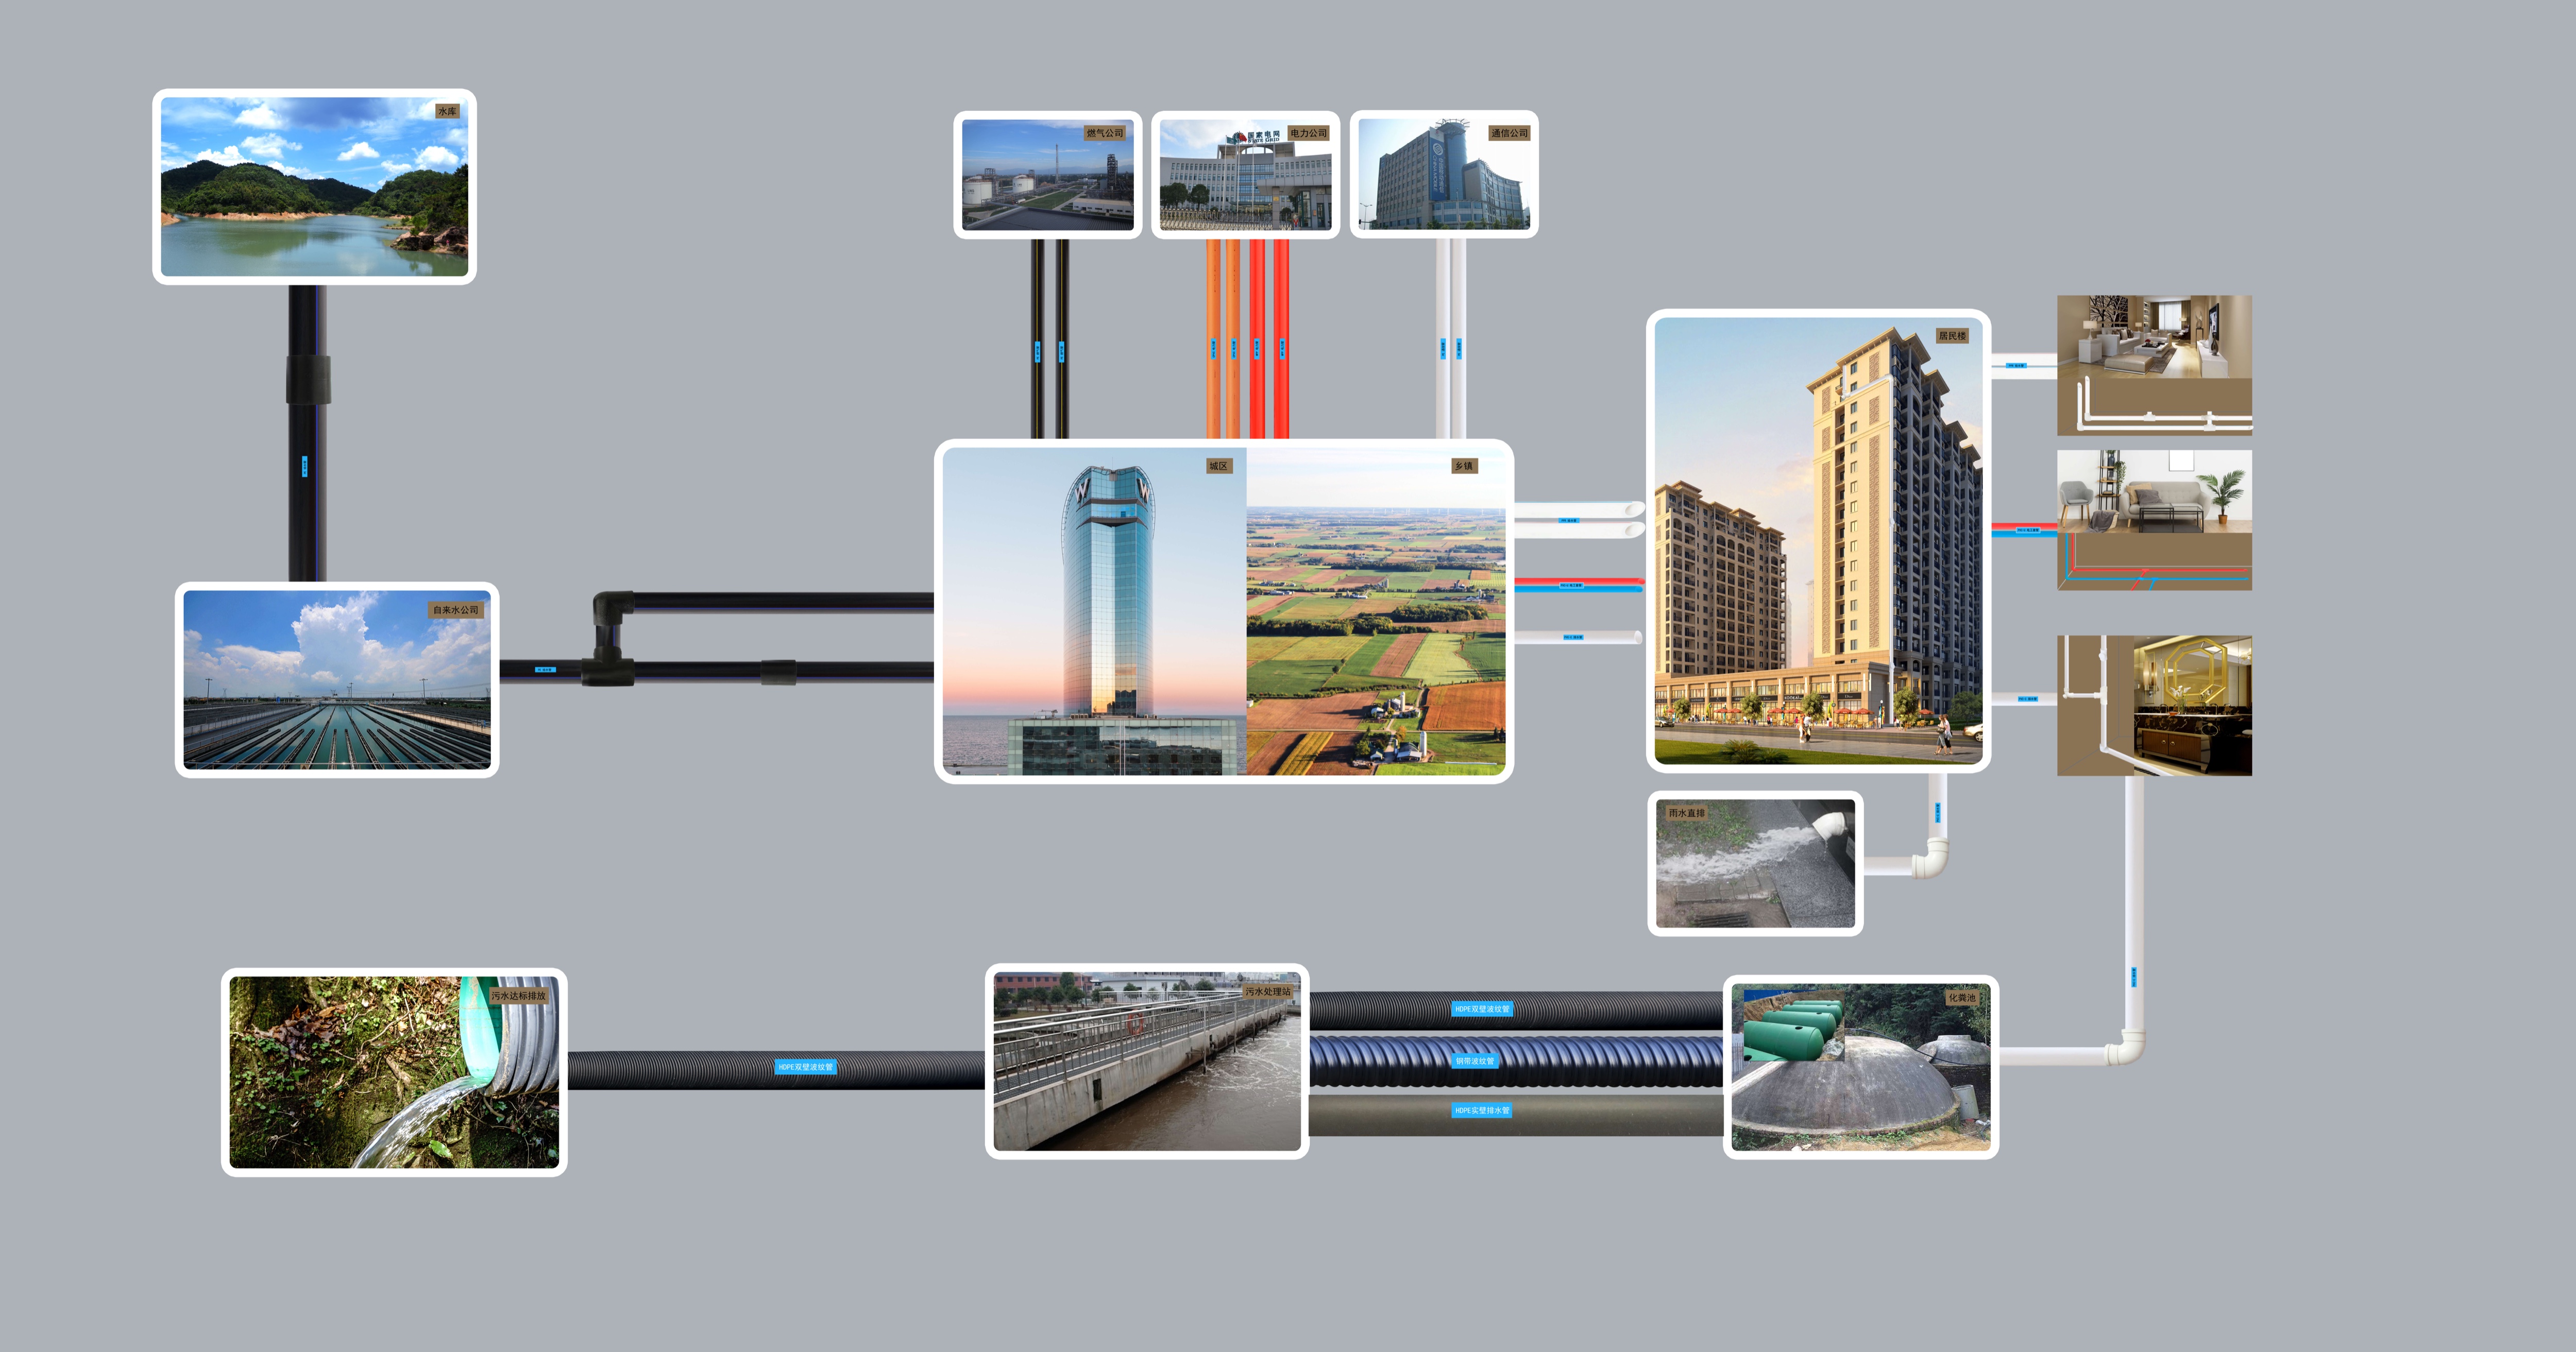 安徽ca88管业集团,PE管、MPP管、PVC管、PE给水管等管材